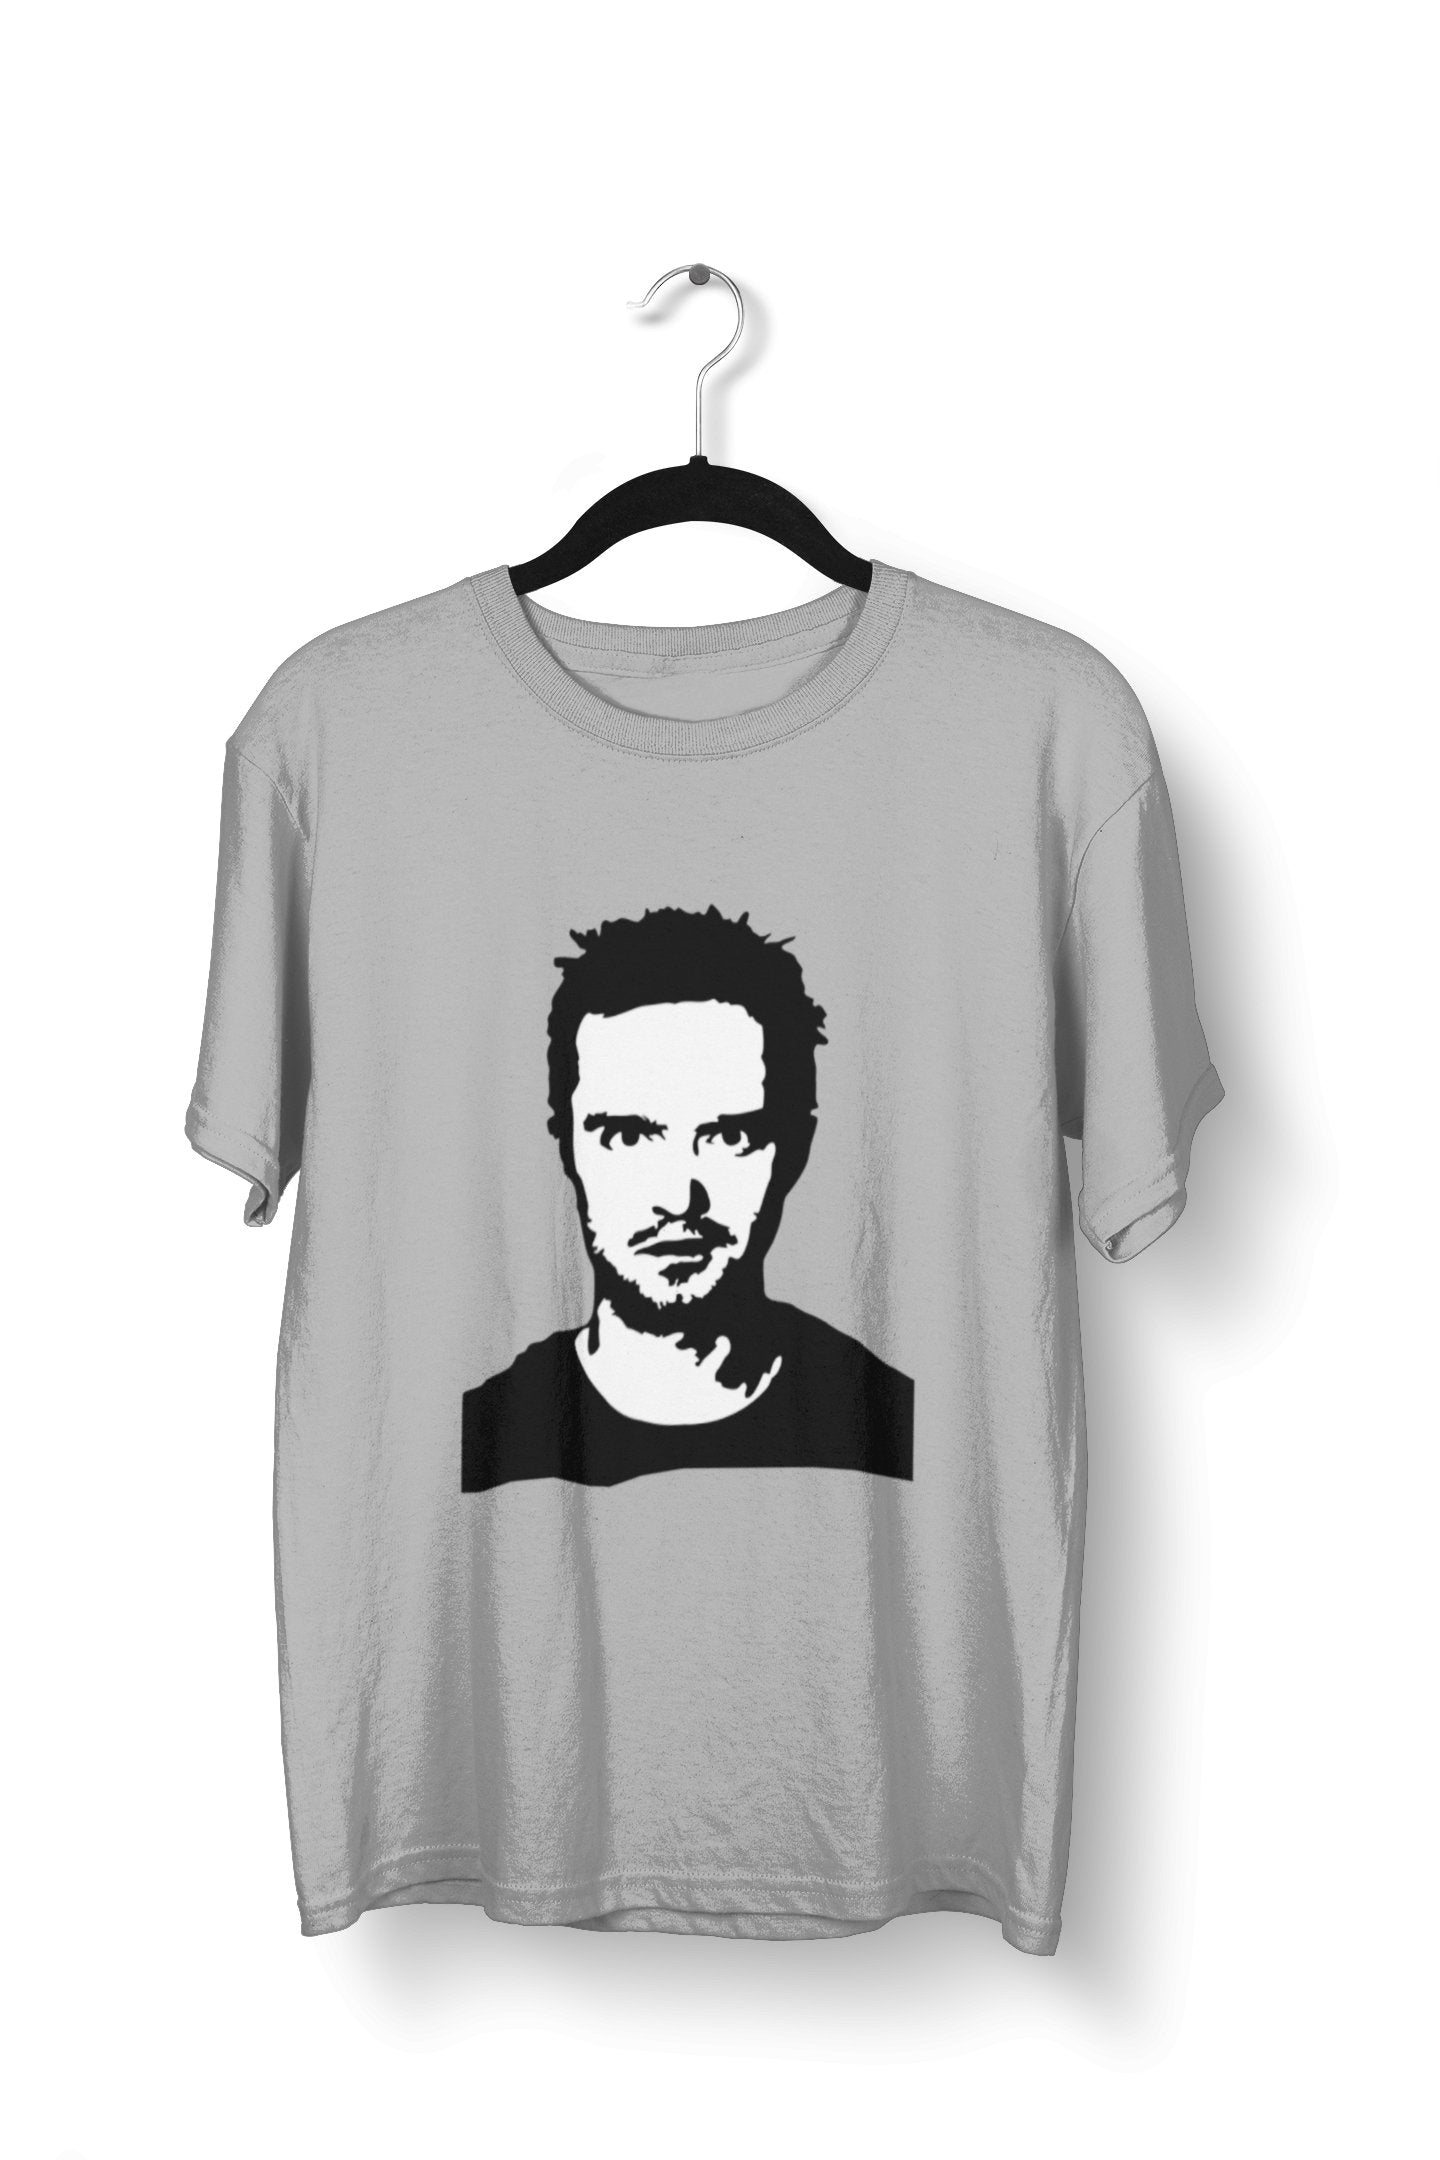 thelegalgang,Jesse Pinkman Sketch T-shirt,MEN.